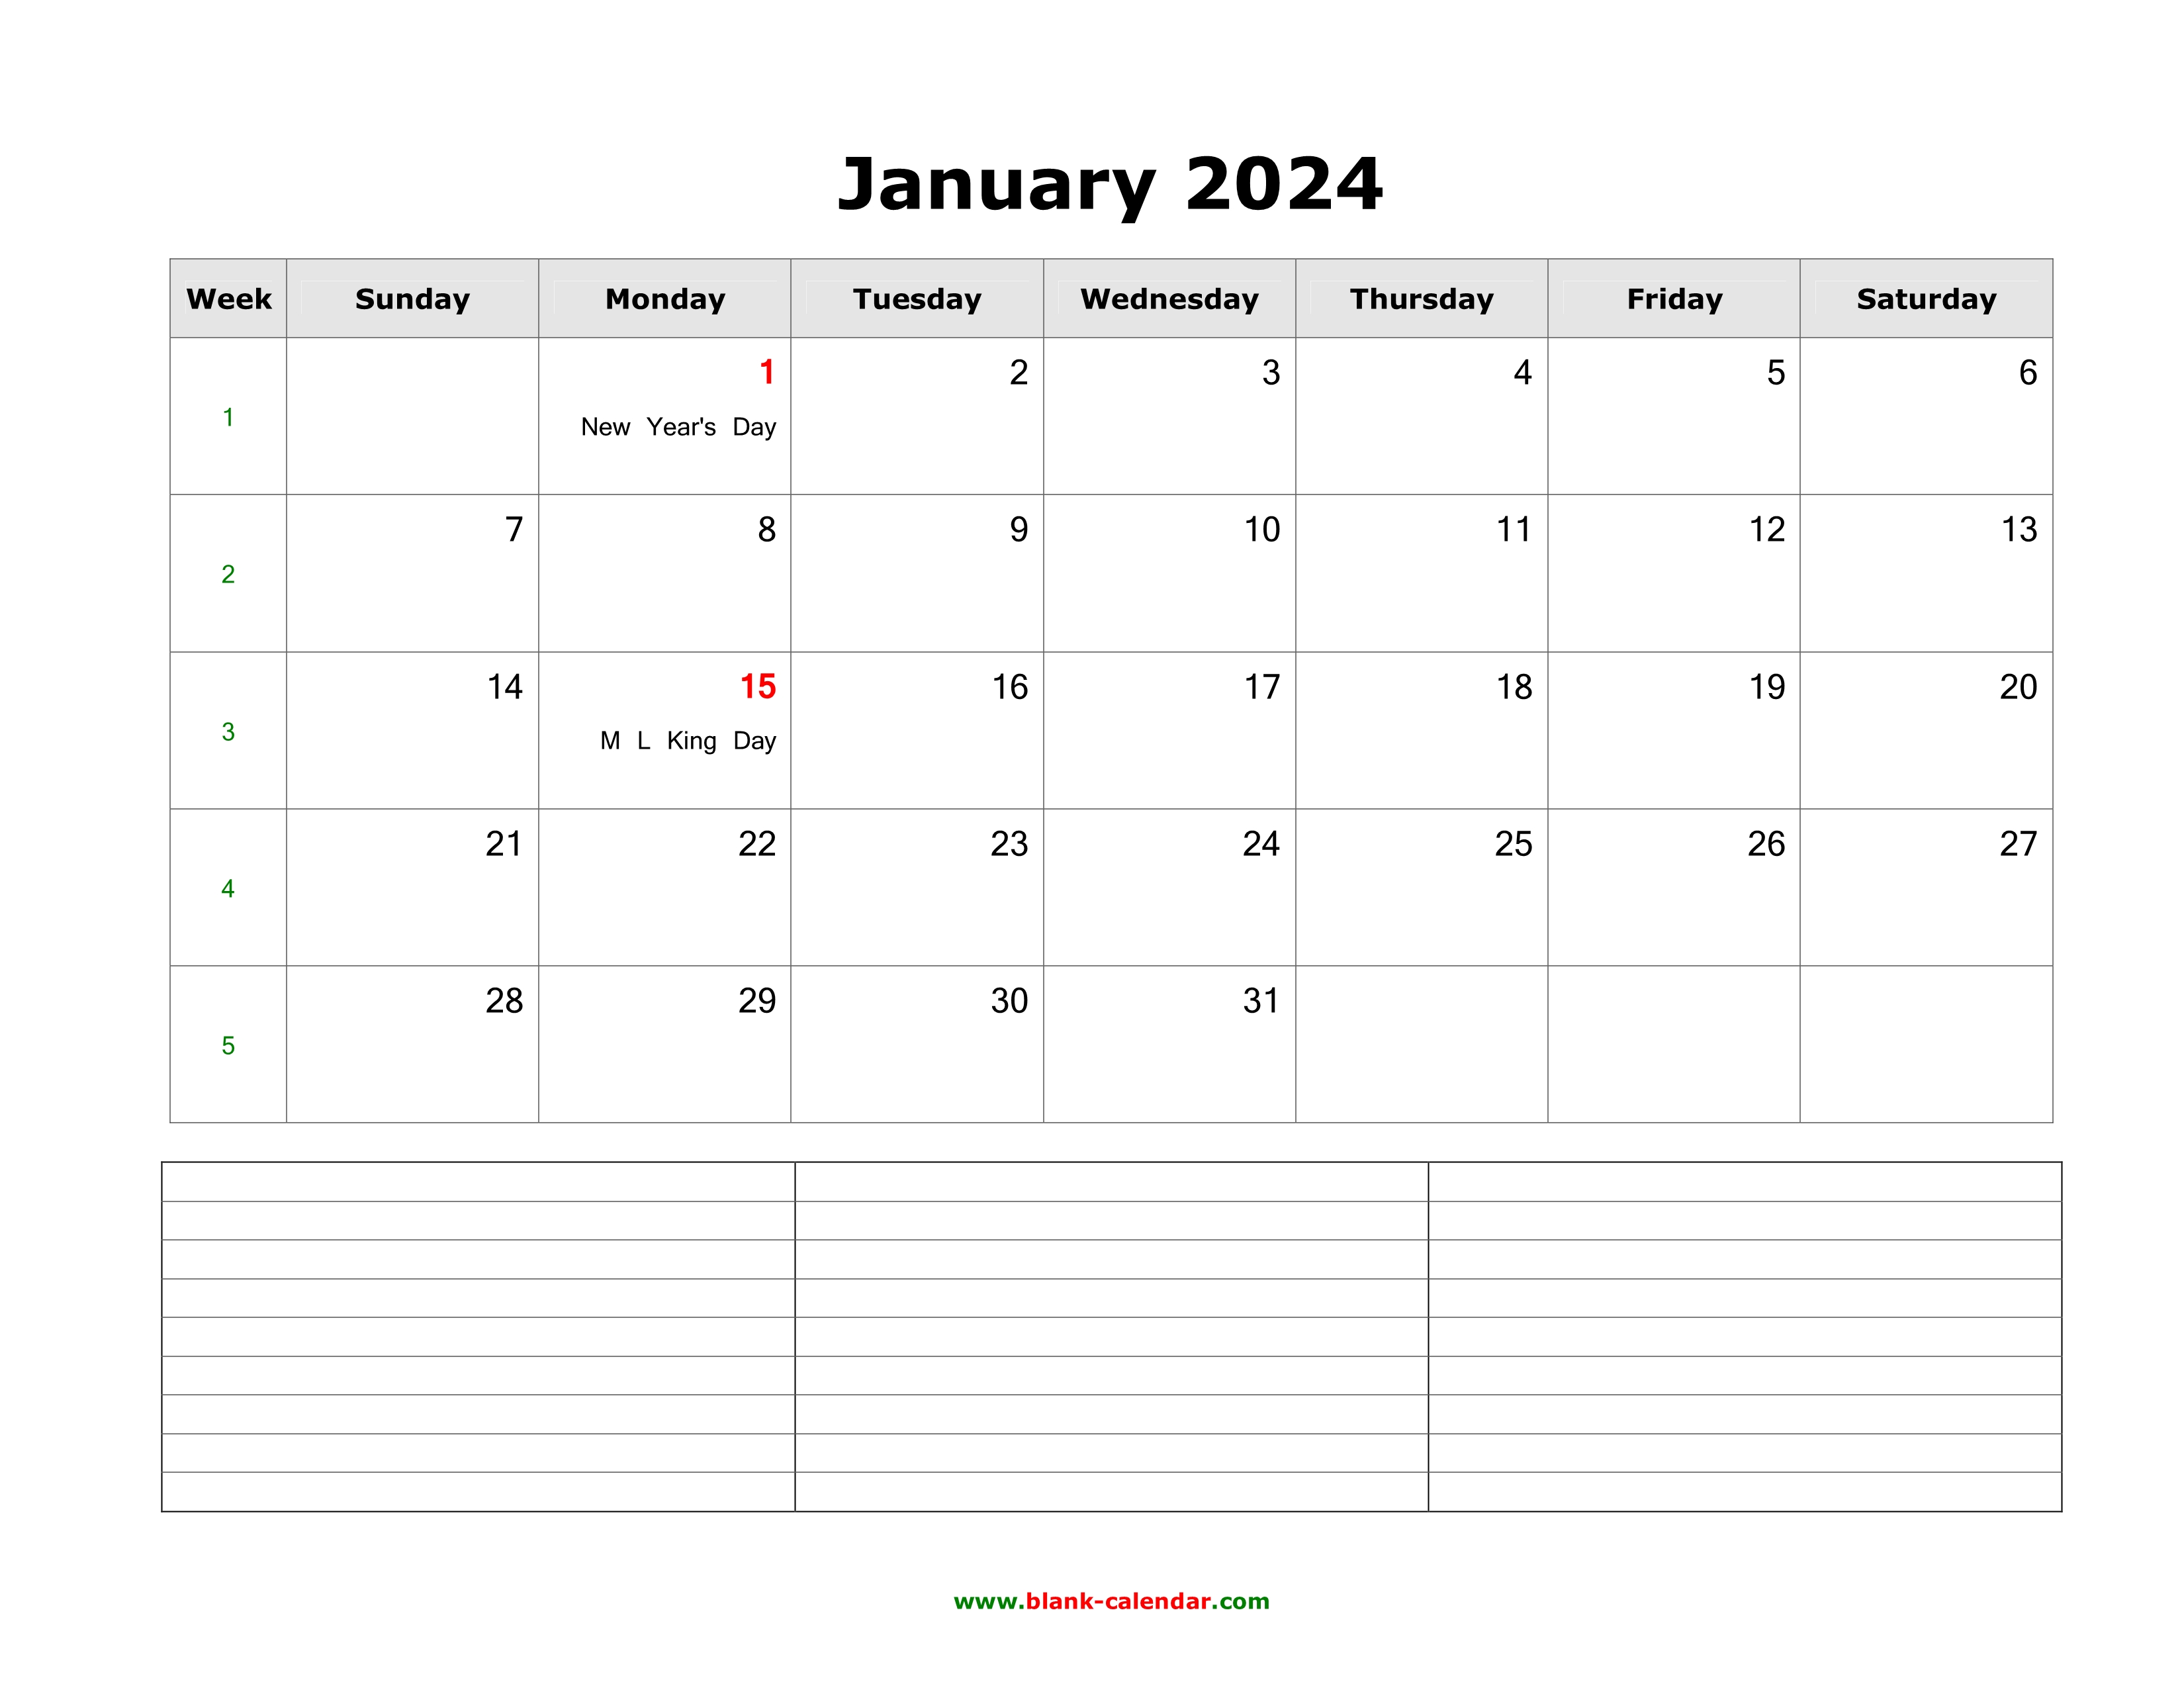 January 2024 Blank Calendar Template Google Docs Karyl Marylin